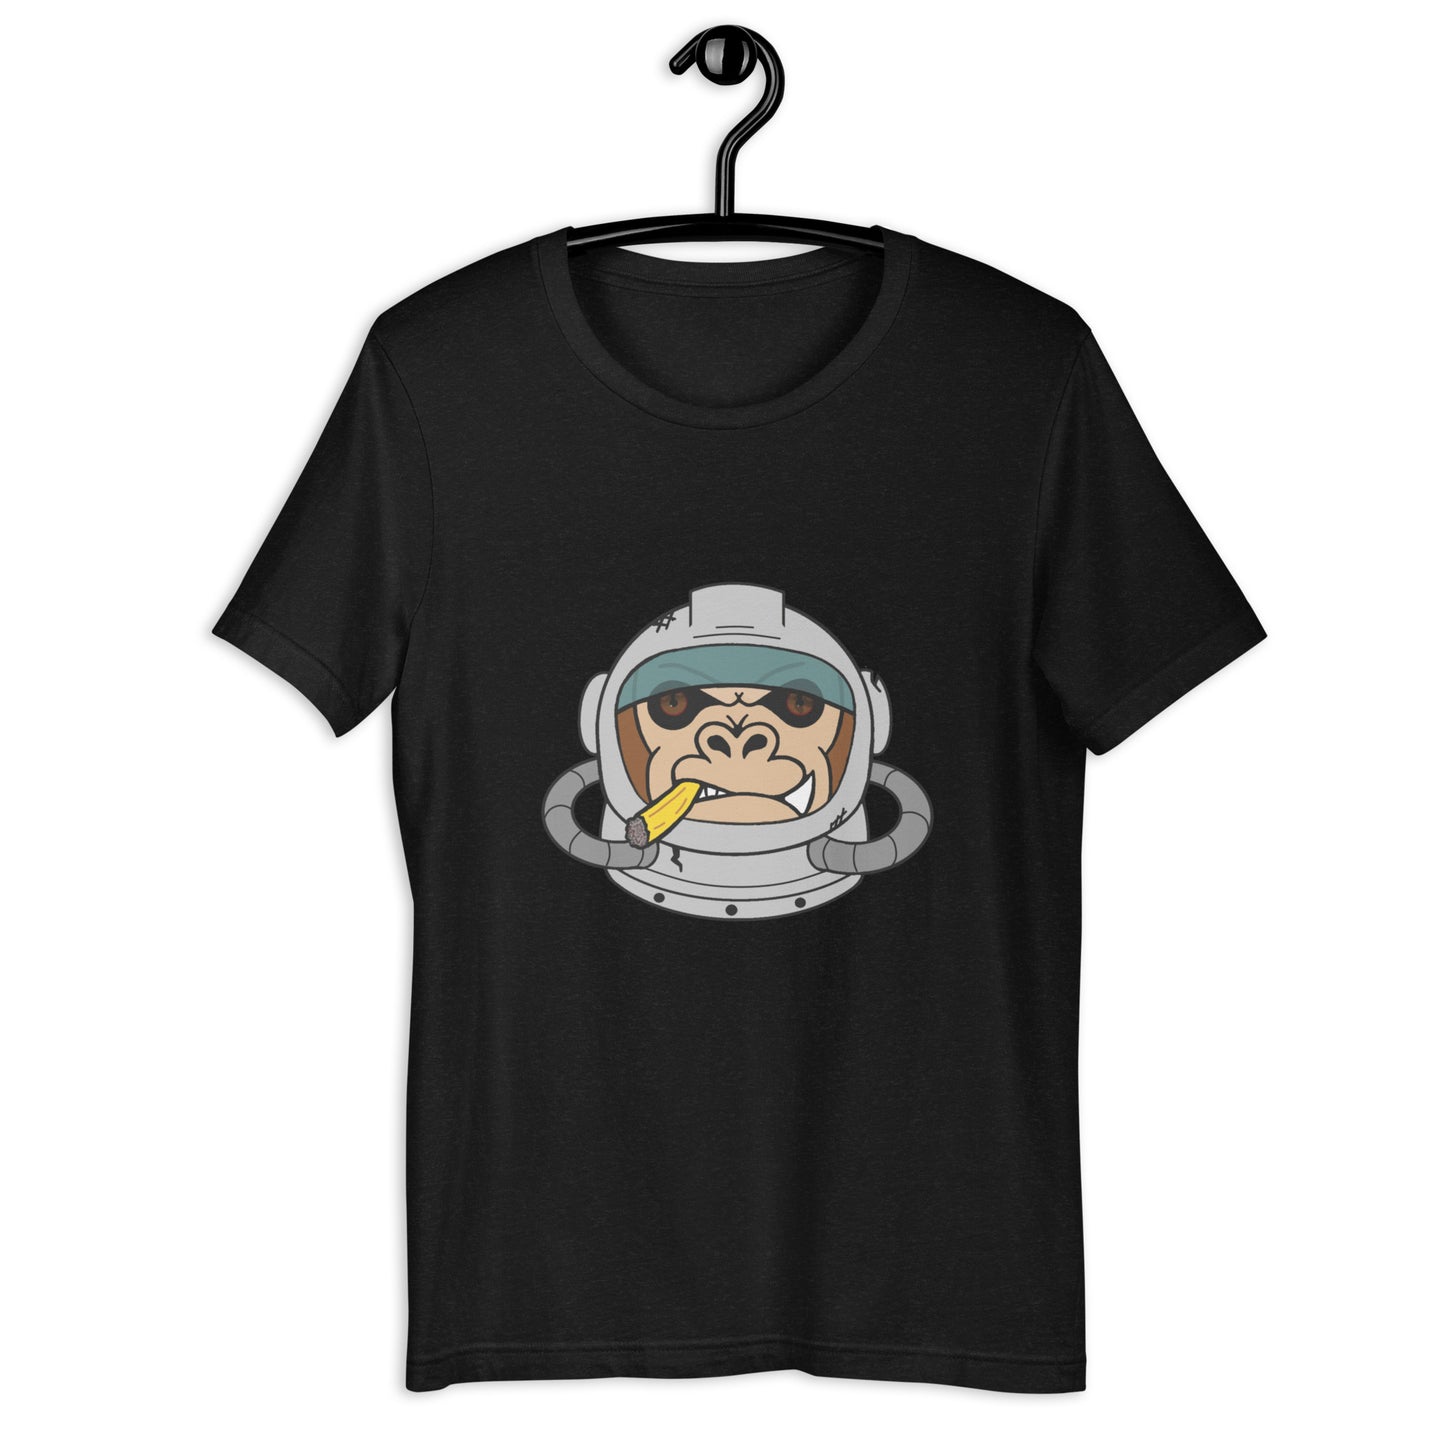 Space monkey Unisex t-shirt